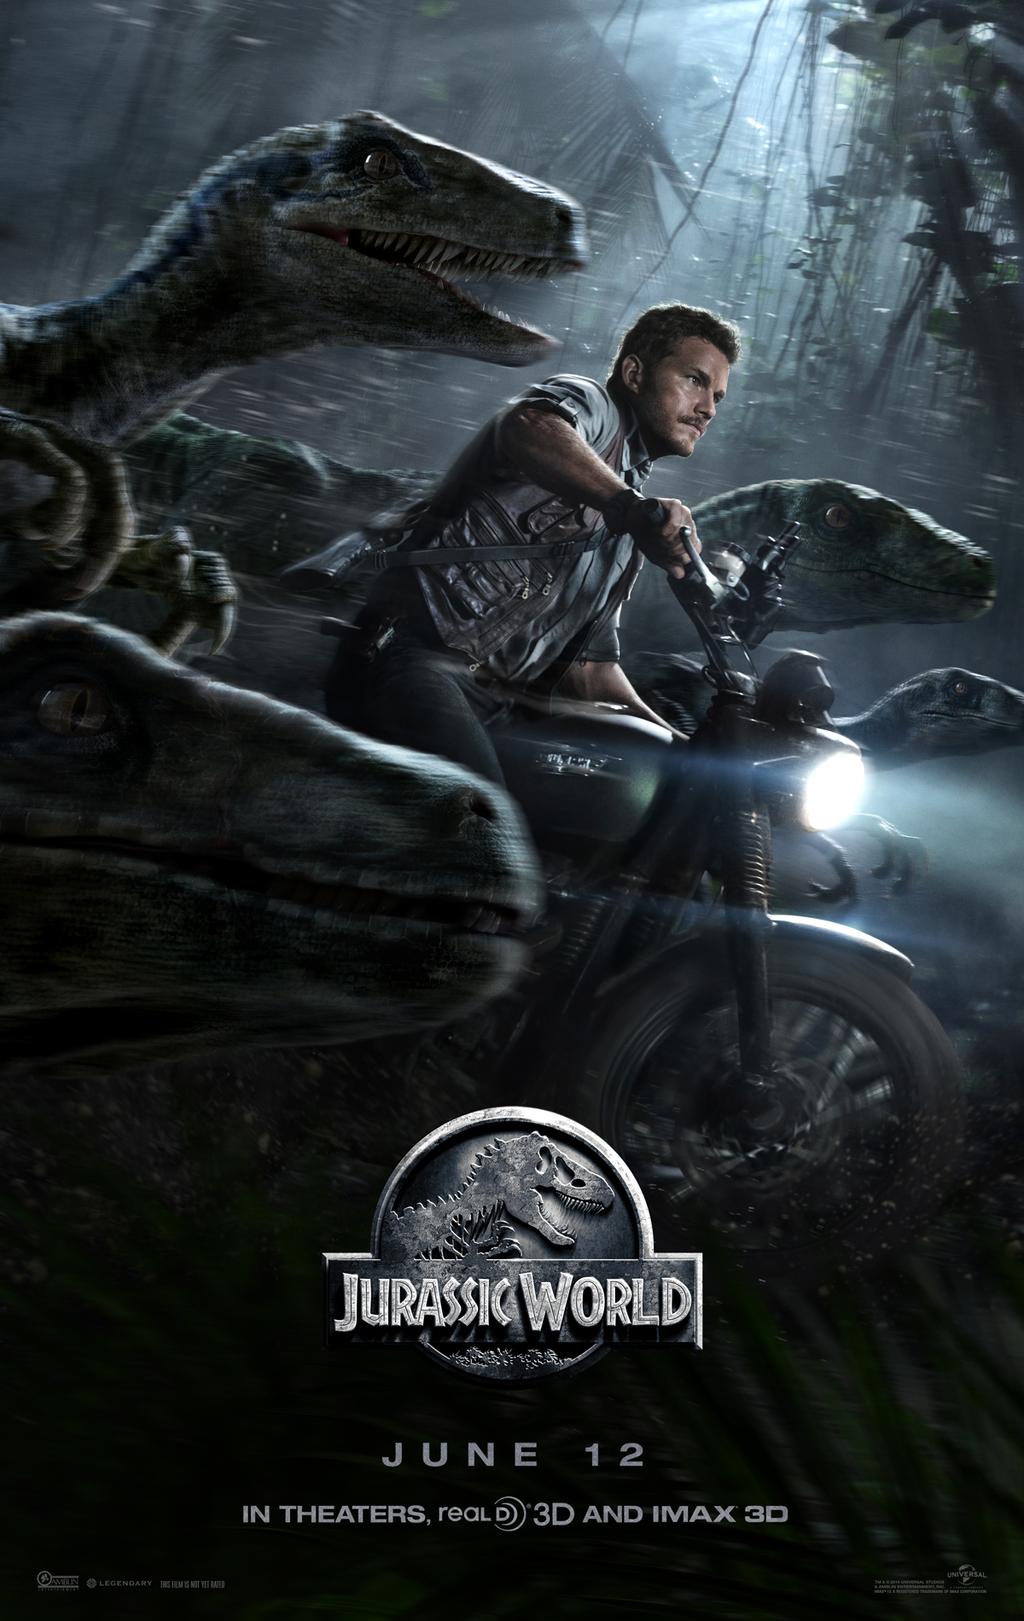 Poster du film Jurassic World réalisé par Colin Trevorrow avec Chris Pratt et ses raptors